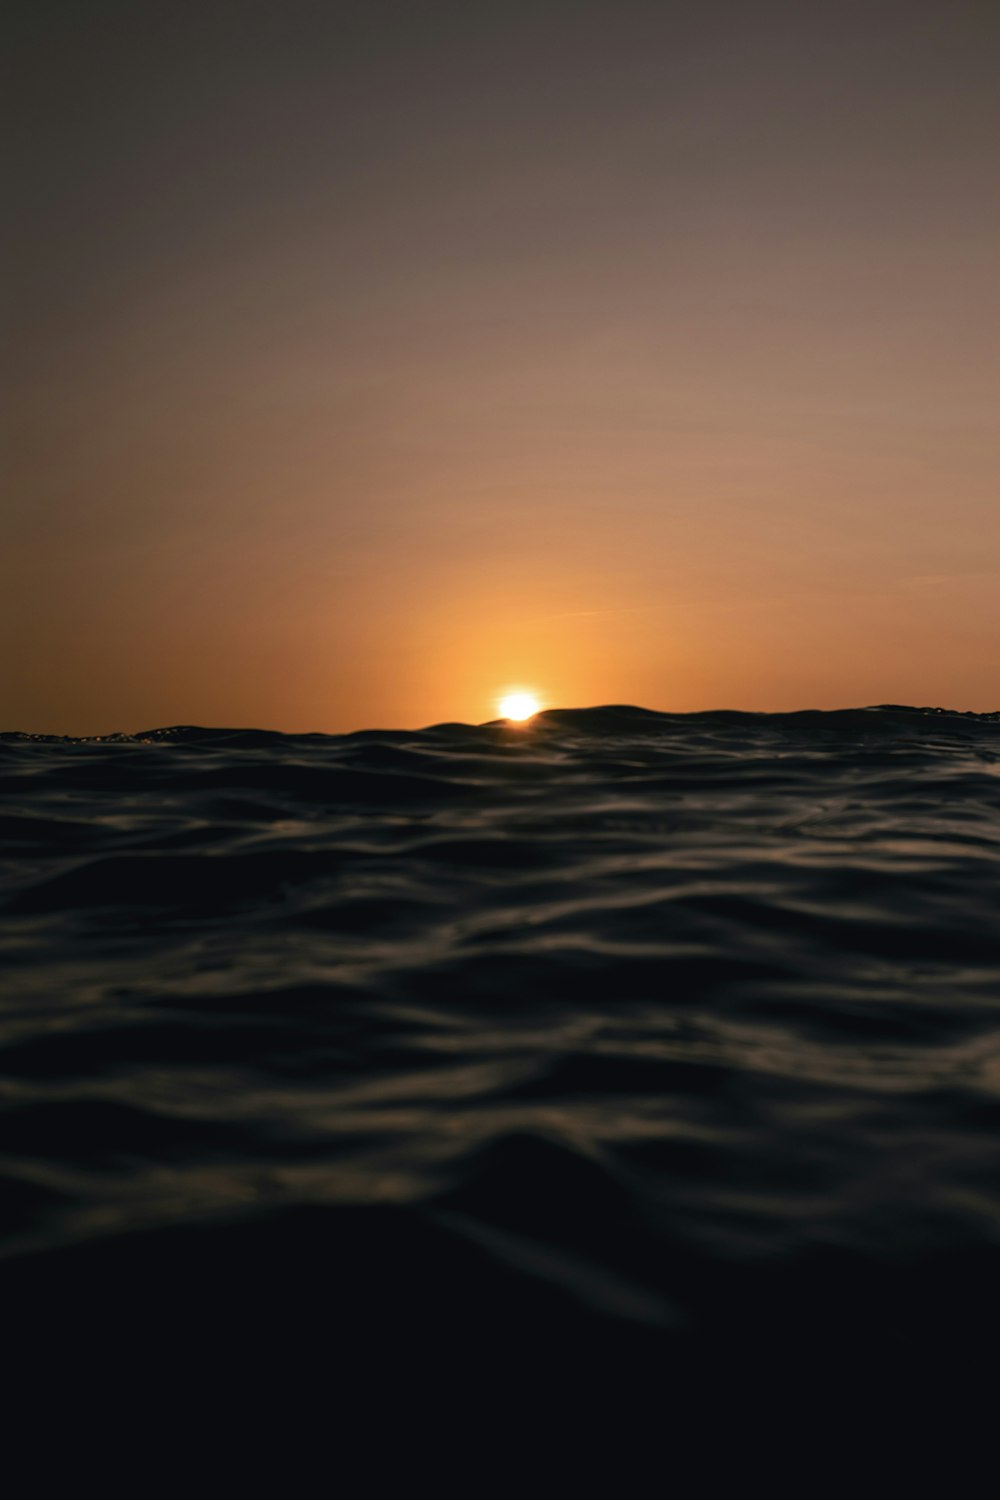 Il sole tramonta sull'orizzonte dell'oceano